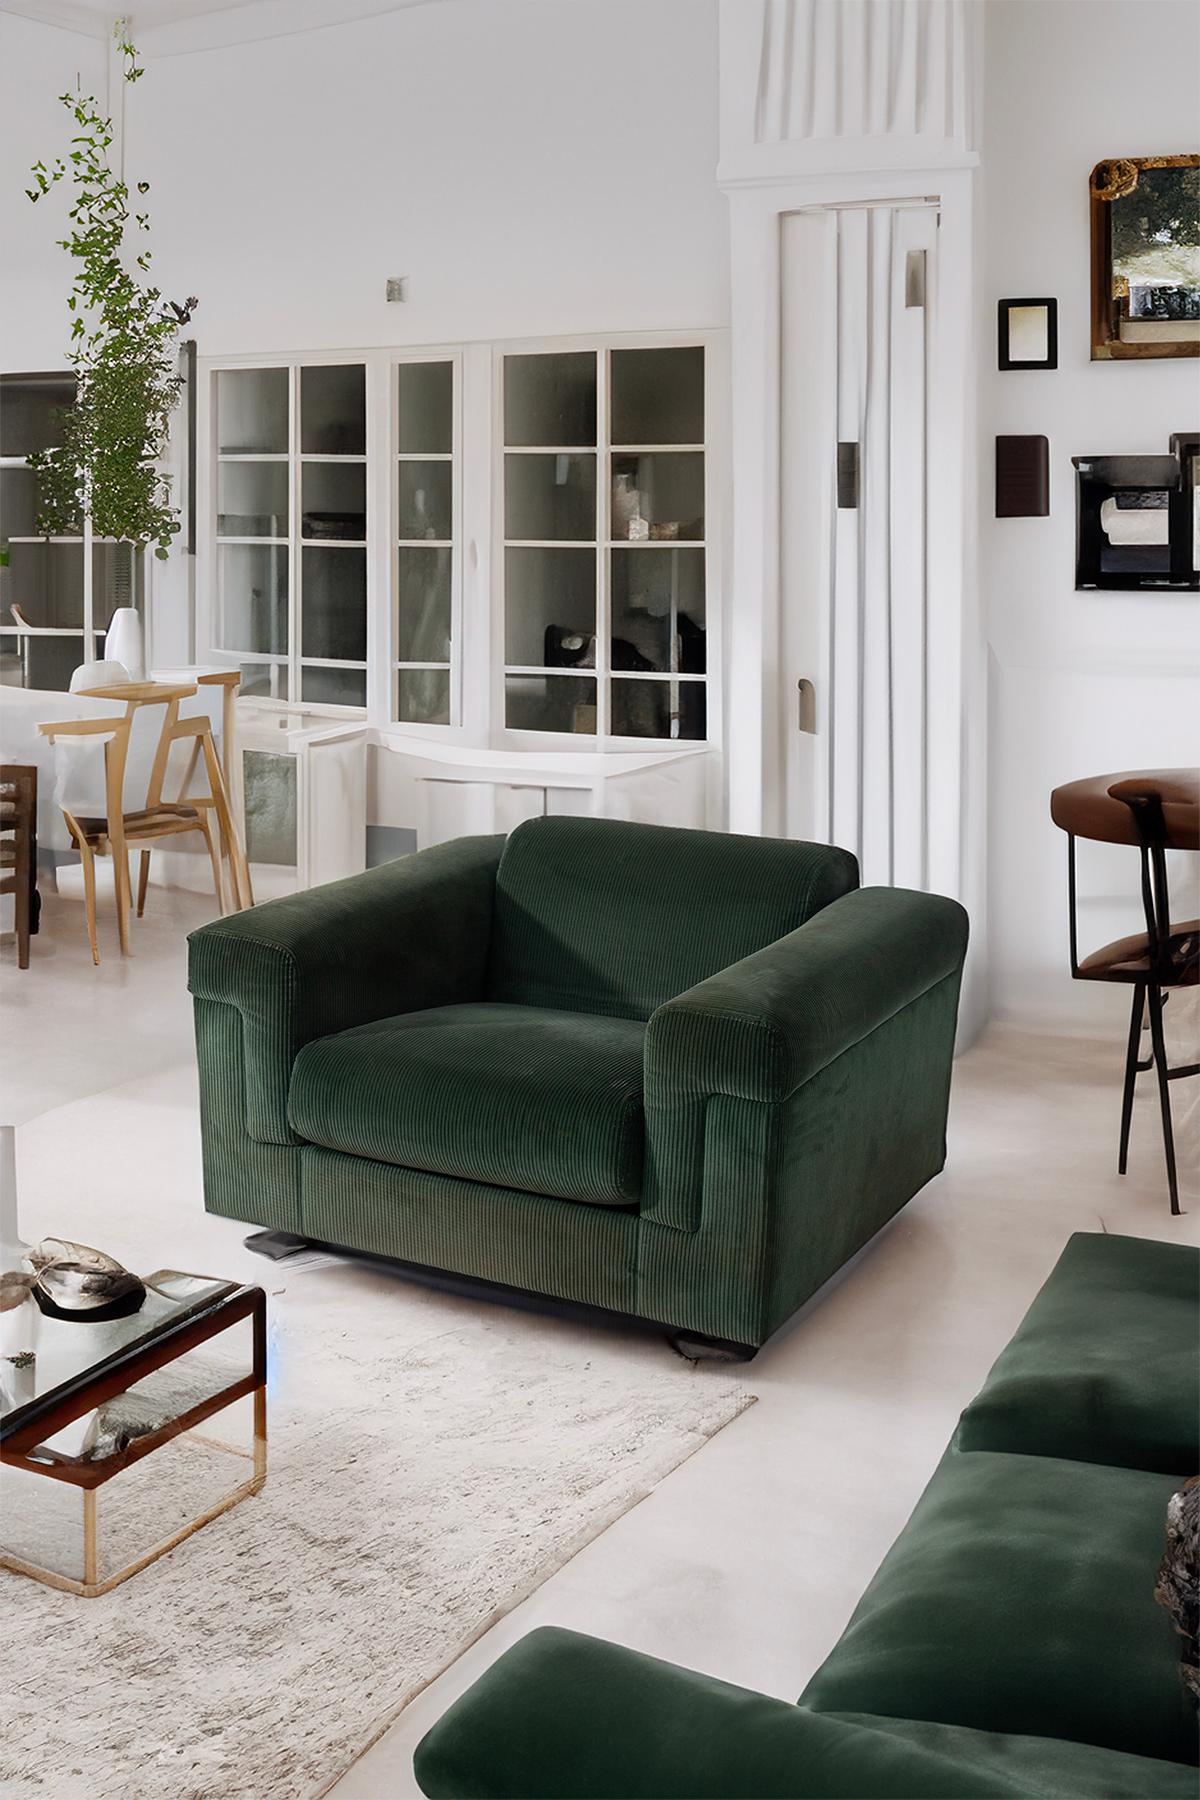 Le fauteuil D120, conçu par Valeria Borsani et Alfredo Bonetti pour Tecno dans les années 1970, témoigne de l'approche novatrice de l'époque en matière de conception de mobilier. Cette pièce remarquable capture l'essence de la sophistication vintage